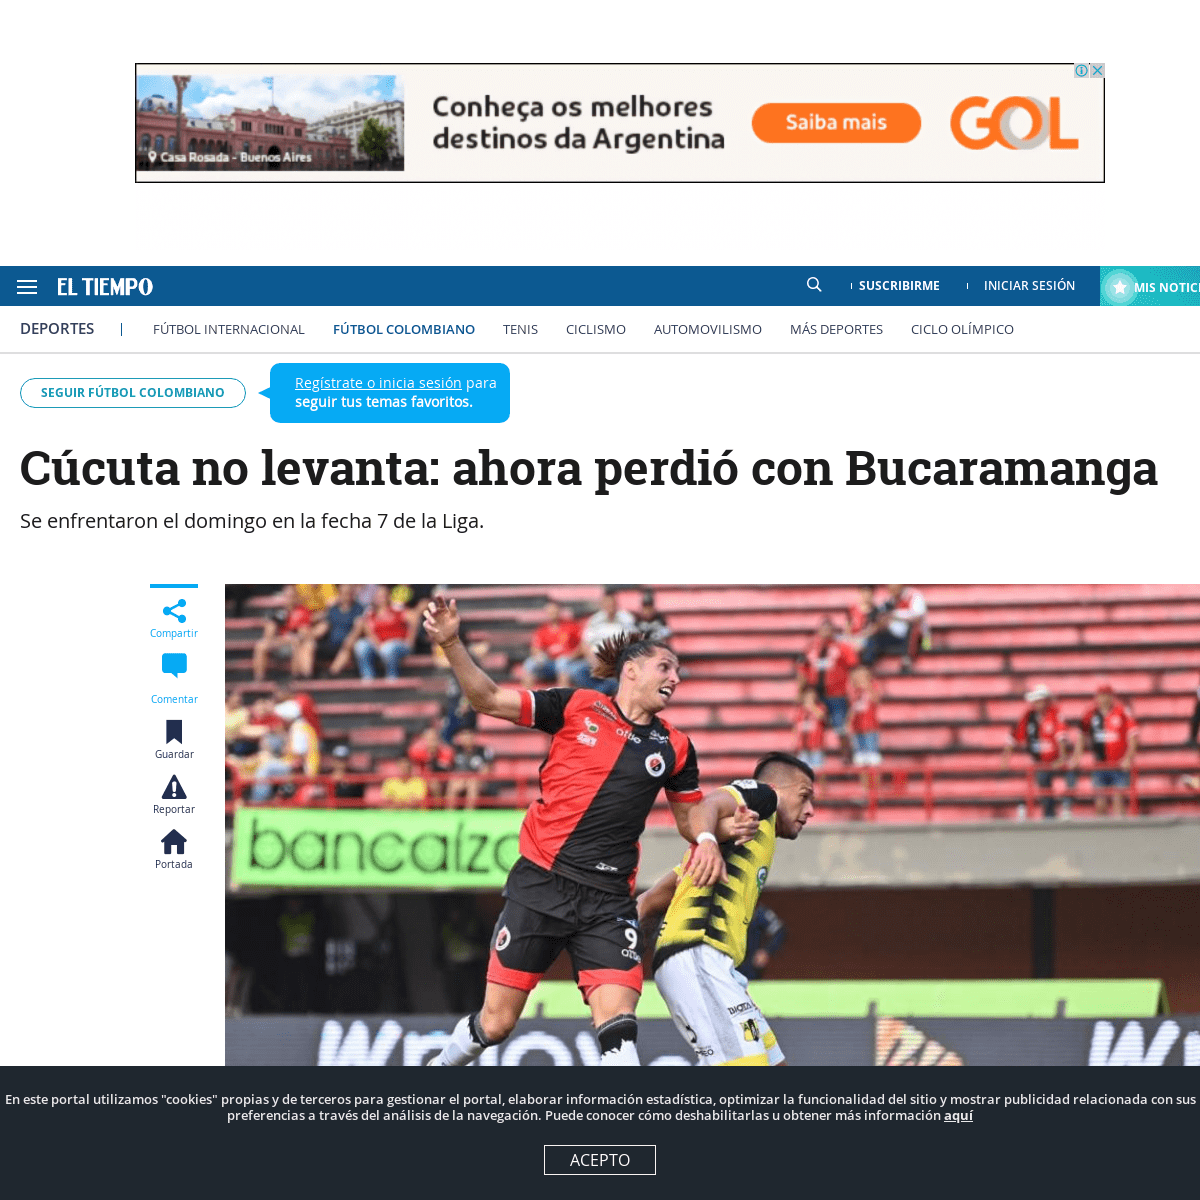 A complete backup of www.eltiempo.com/deportes/futbol-colombiano/cucuta-vs-bucaramanga-resultado-y-cronica-del-partido-de-la-lig